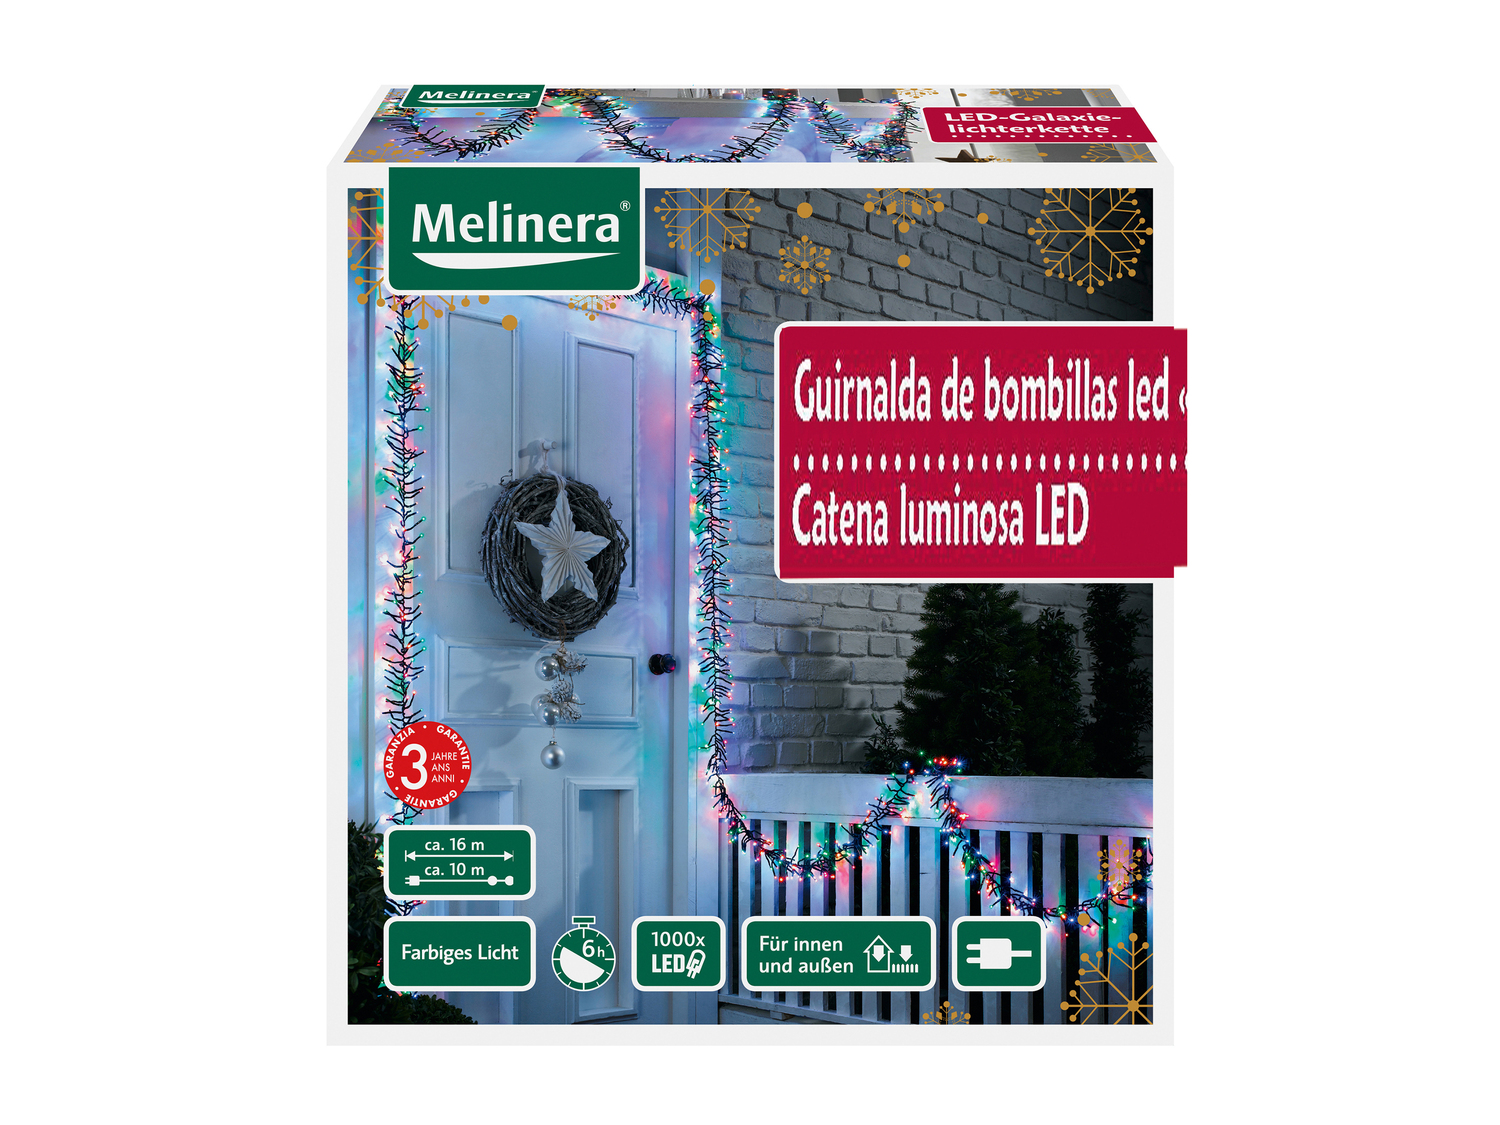 Catena luminosa 1000 LED Melinera, le prix 29.99 &#8364; 
- Per ambienti interni ...